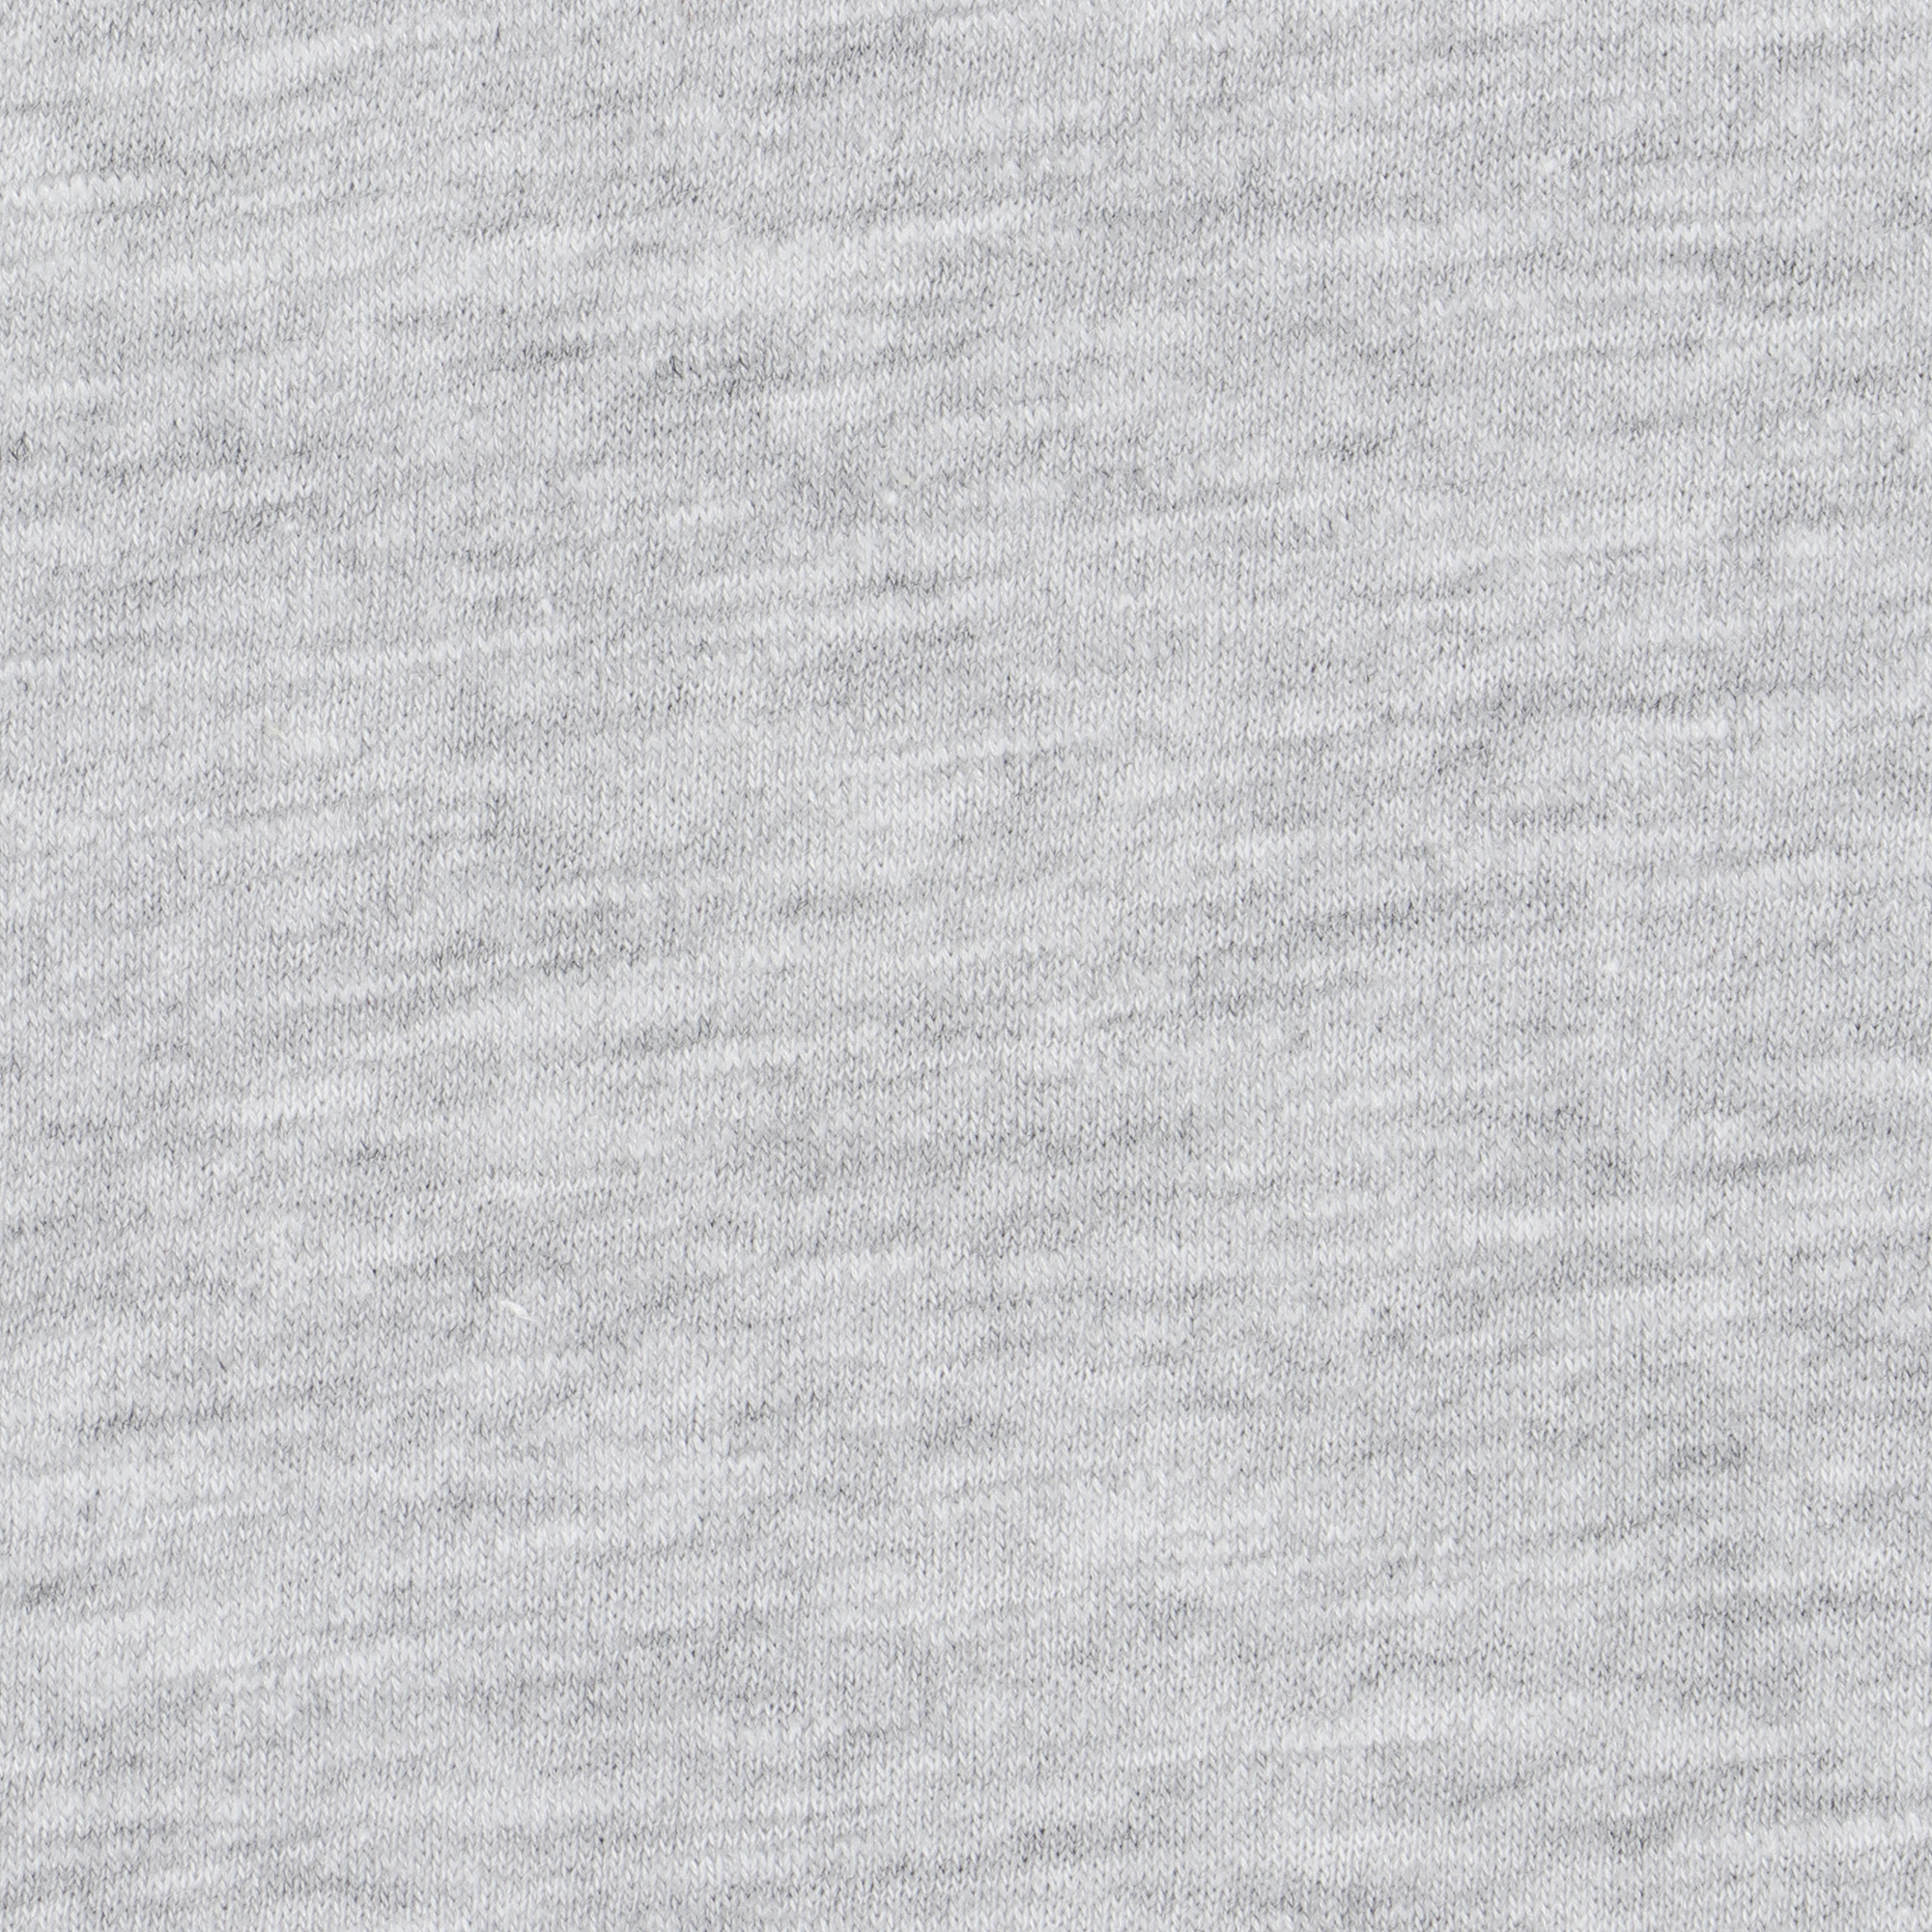 Футболка мужская Pantelemone MF-907 серый меланж 50, размер 50 - фото 3